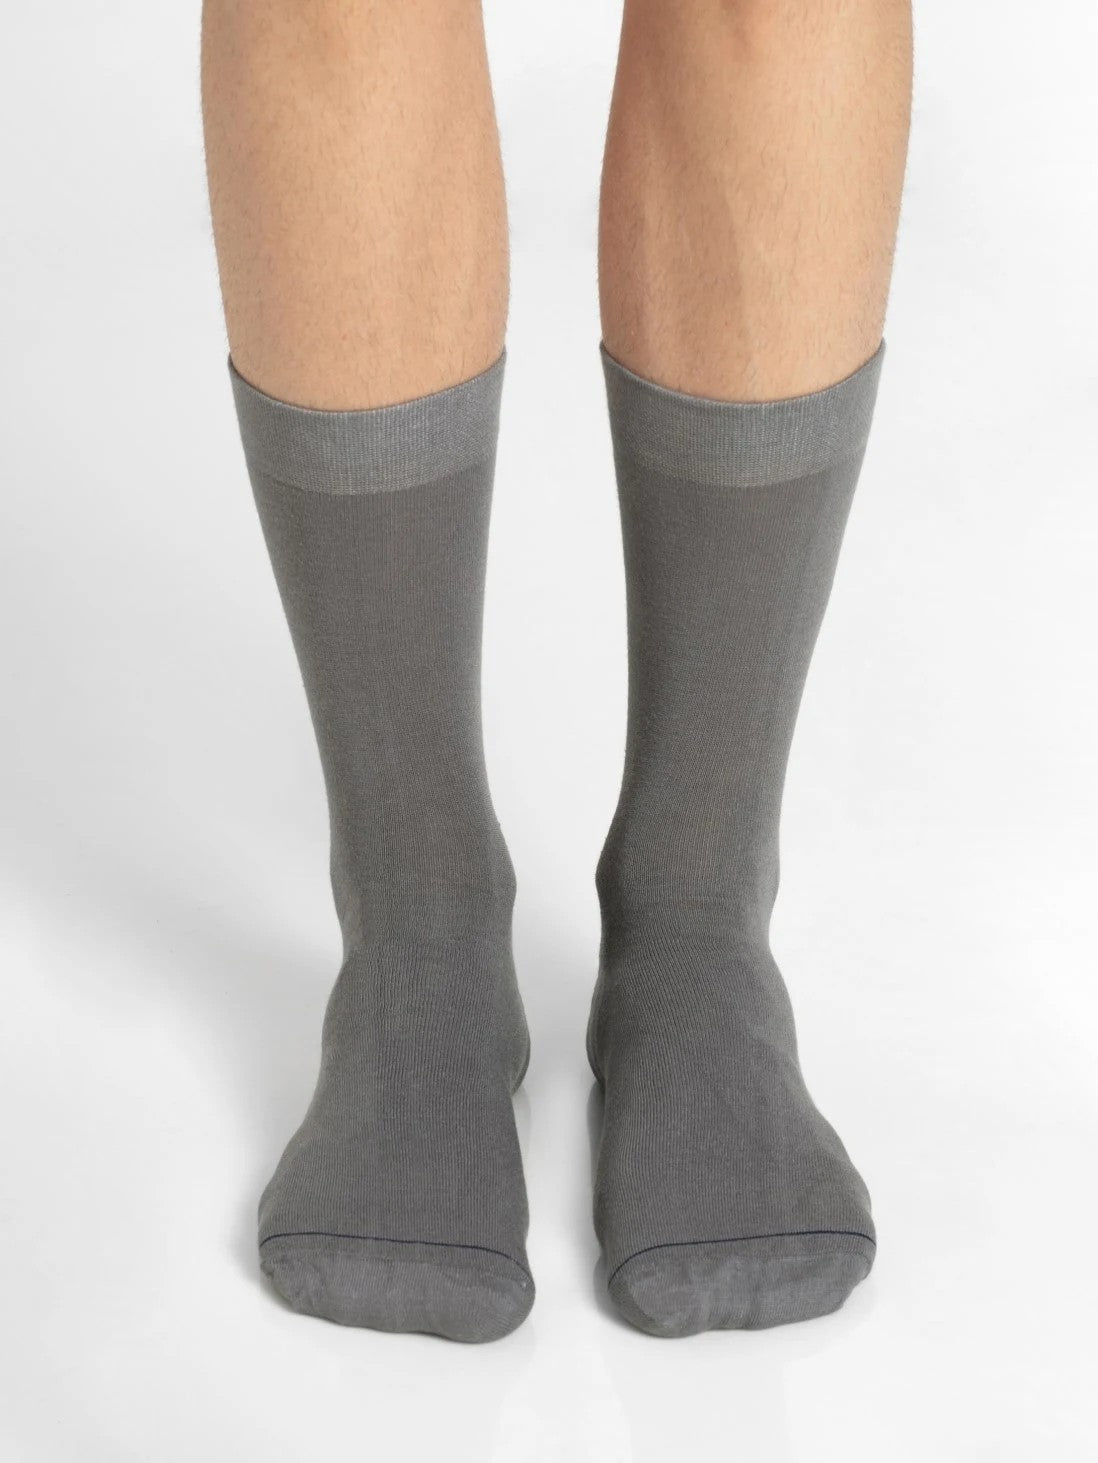 Men's Assorted Calf Length Socks